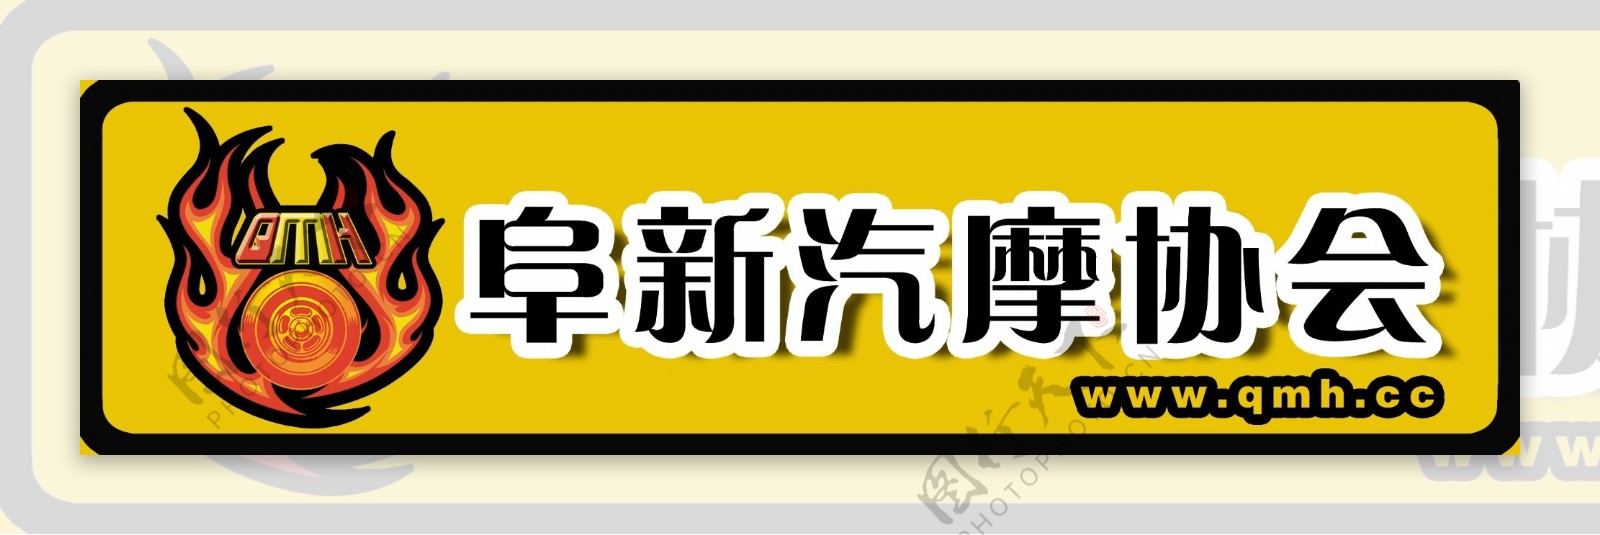 阜新汽摩协会logo图片